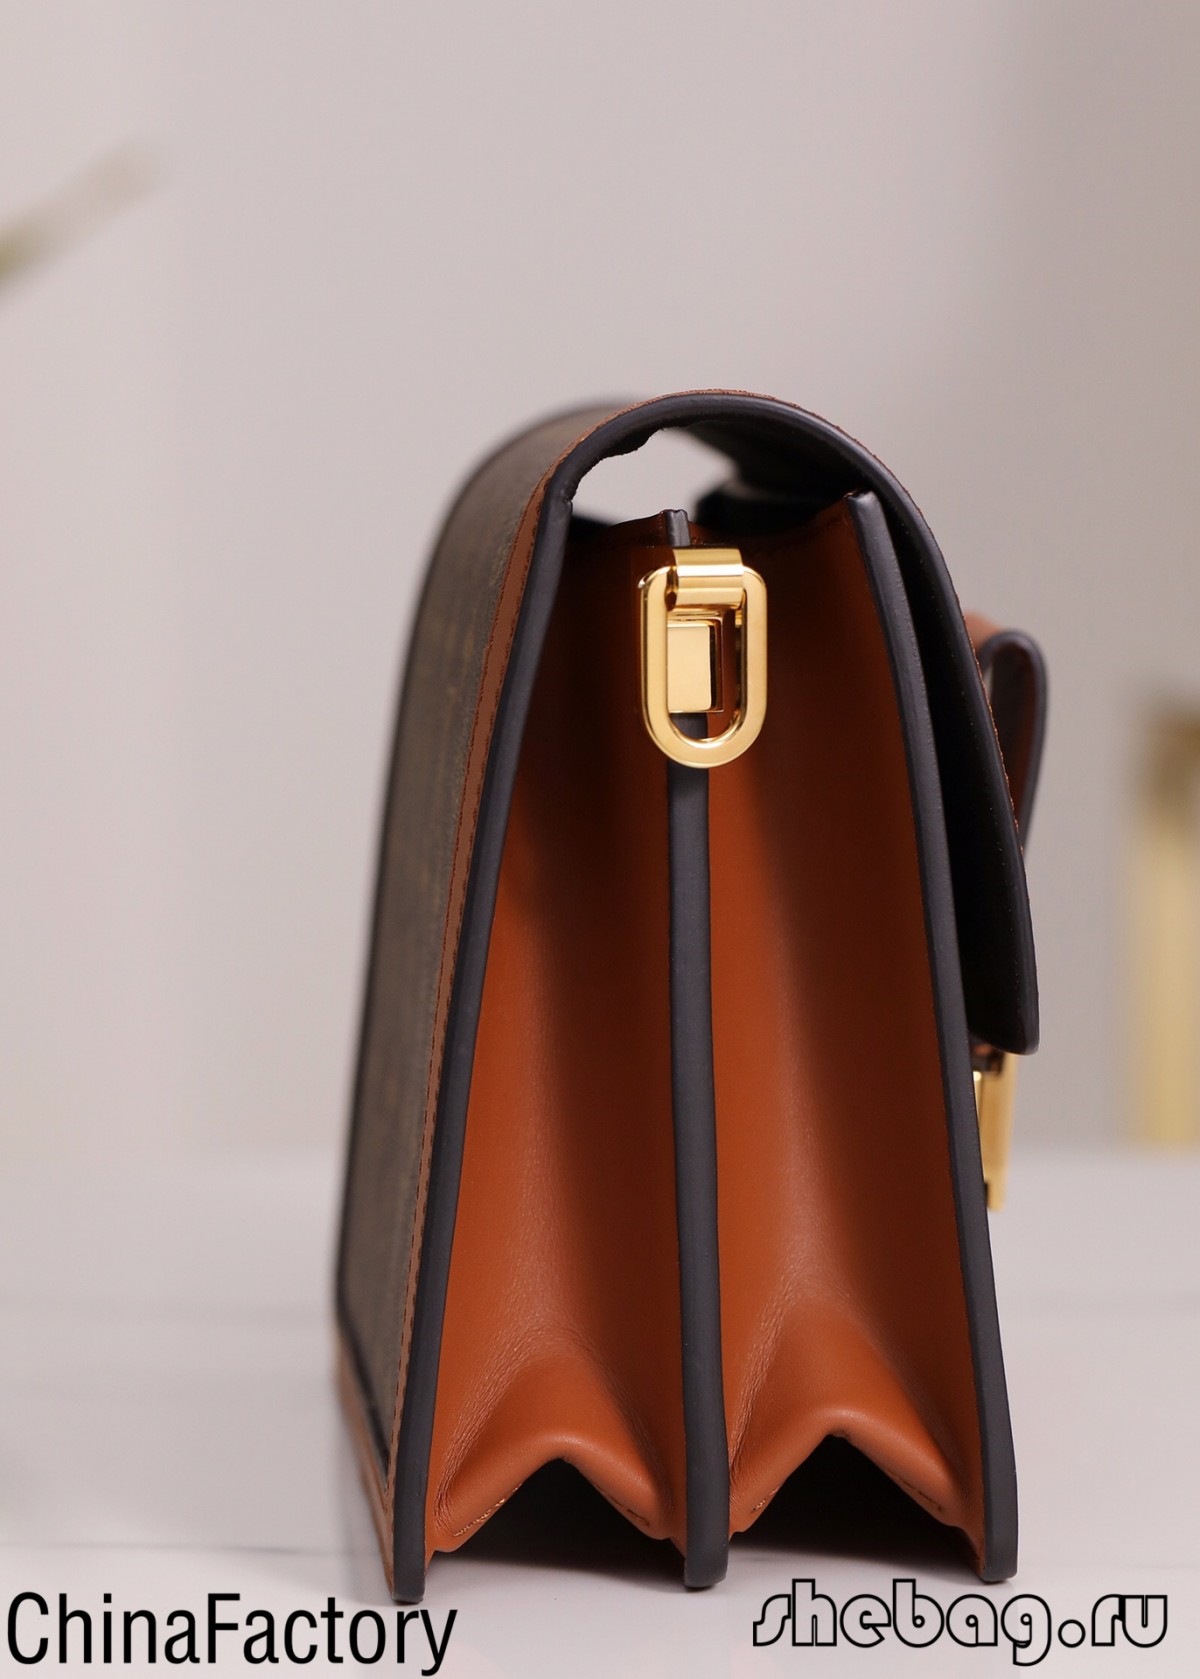 Tôi muốn mua túi thiết kế sao chép, khuyến nghị bán chạy nhất của DHGate? (Cập nhật năm 2022) -Túi Louis Vuitton giả chất lượng tốt nhất Cửa hàng trực tuyến, túi thiết kế bản sao ru